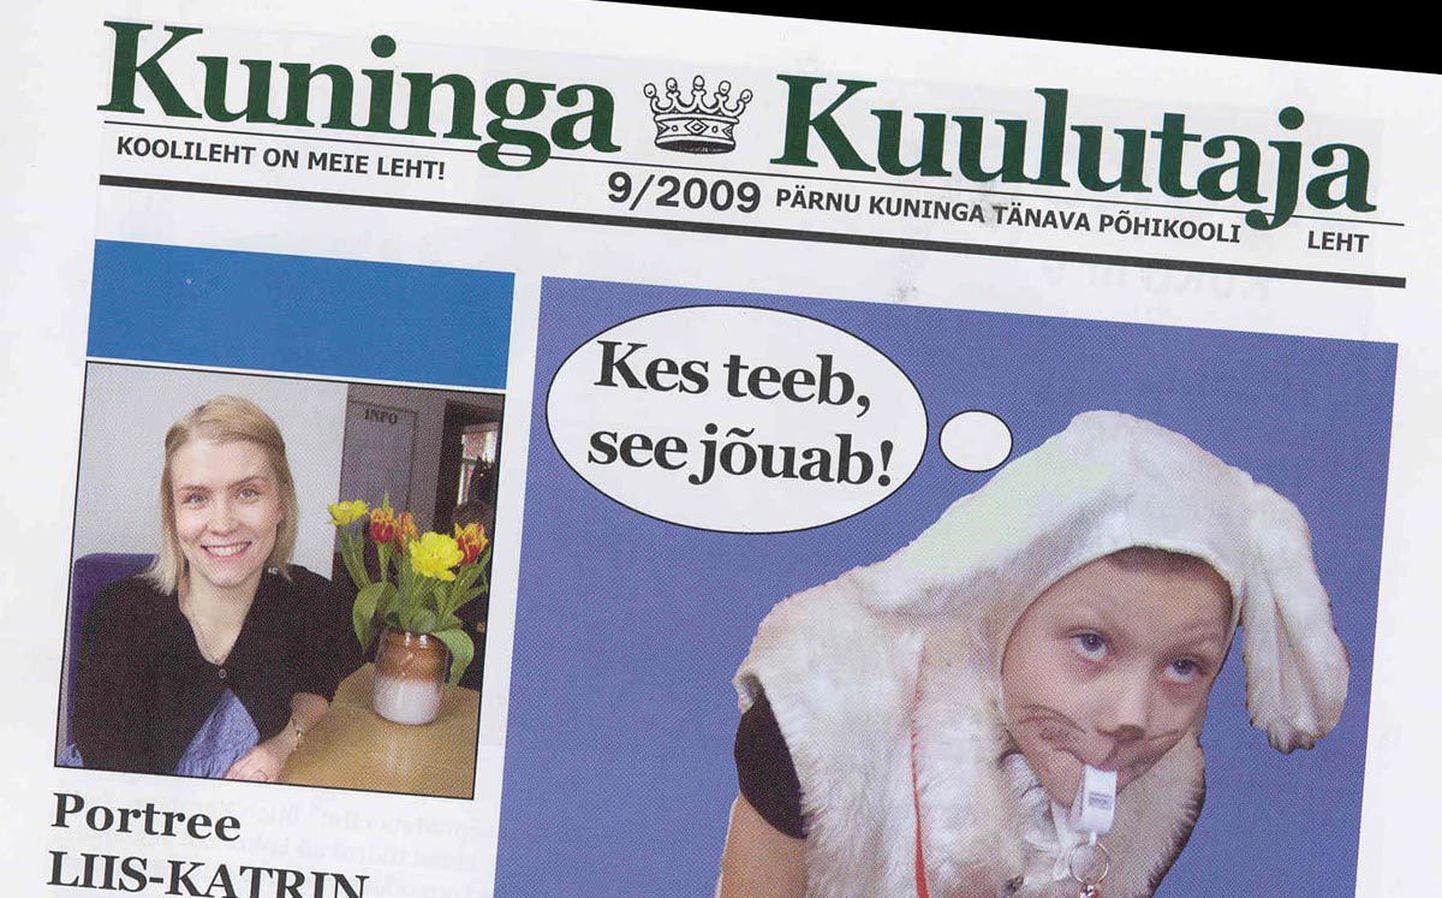 Pärnu Kuninga tänava põhikooli väljaanne Kuninga Kuulutaja tunnistati parimaks põhikooli leheks.